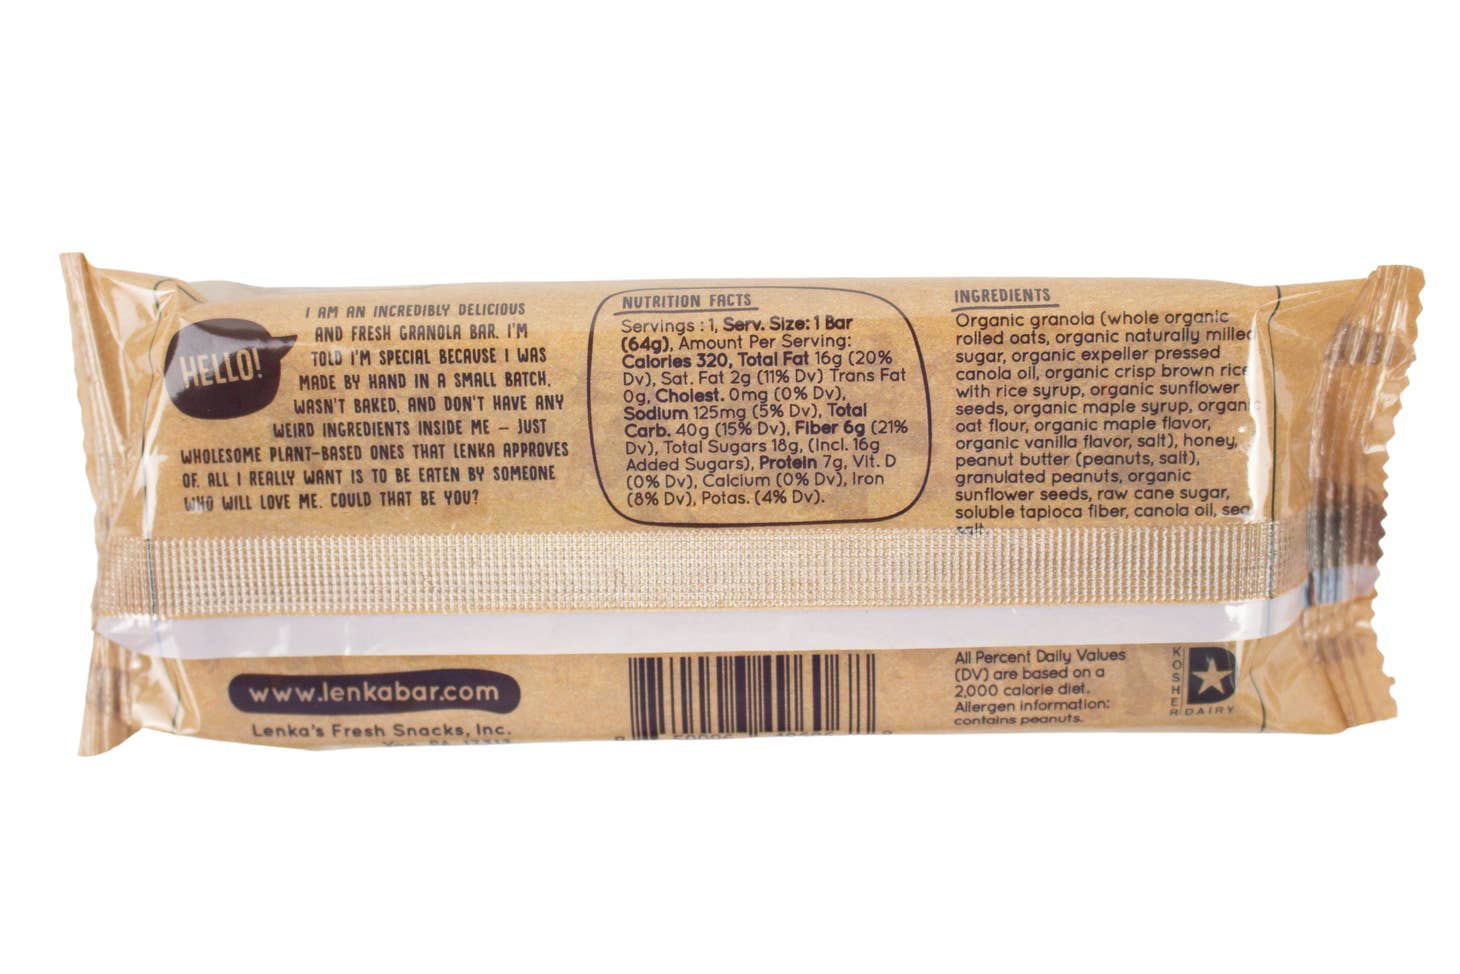 Peanut Butter with Sea Salt Granola Bar